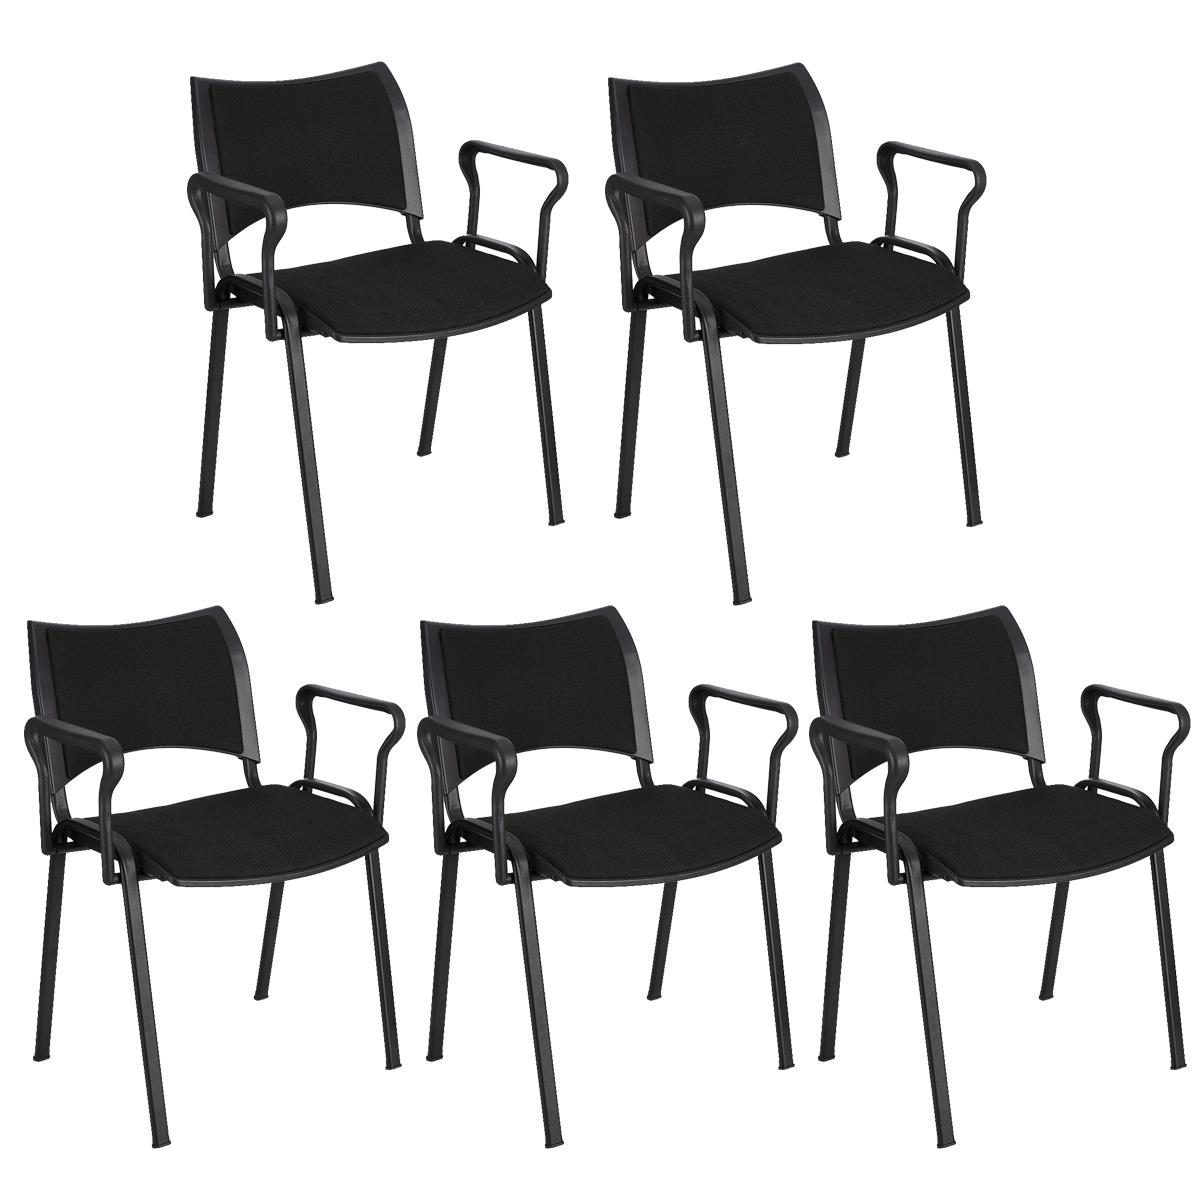 Lote 5 Cadeiras de Visita ROMEL COM BRAÇOS, Empilhável, Pernas Pretas, Em Pano, Preto